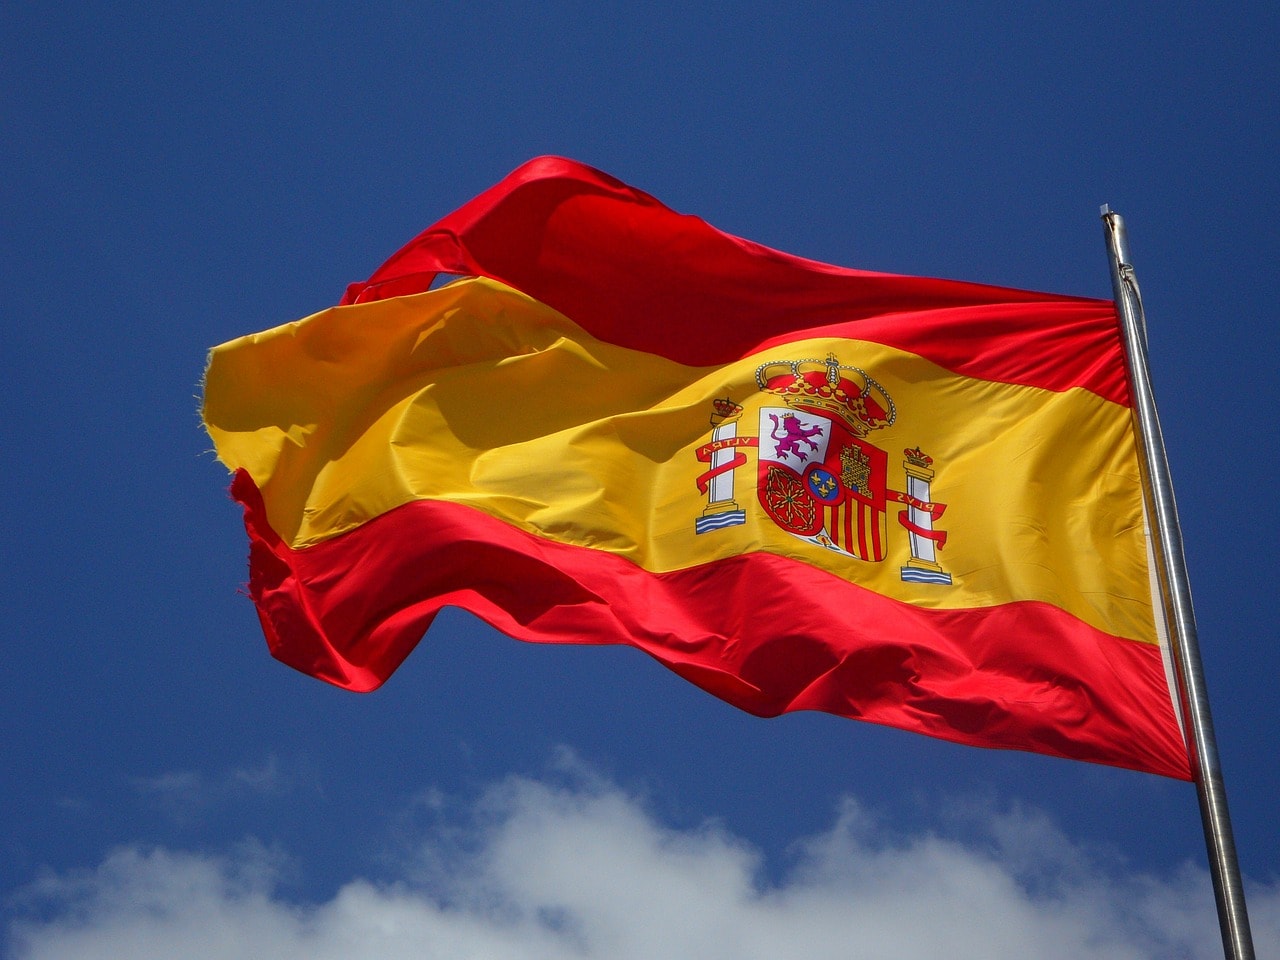 Un vol Espagne pas cher avec Algofly illustré par son drapeau national jaune et rouge accompagné de son blason.